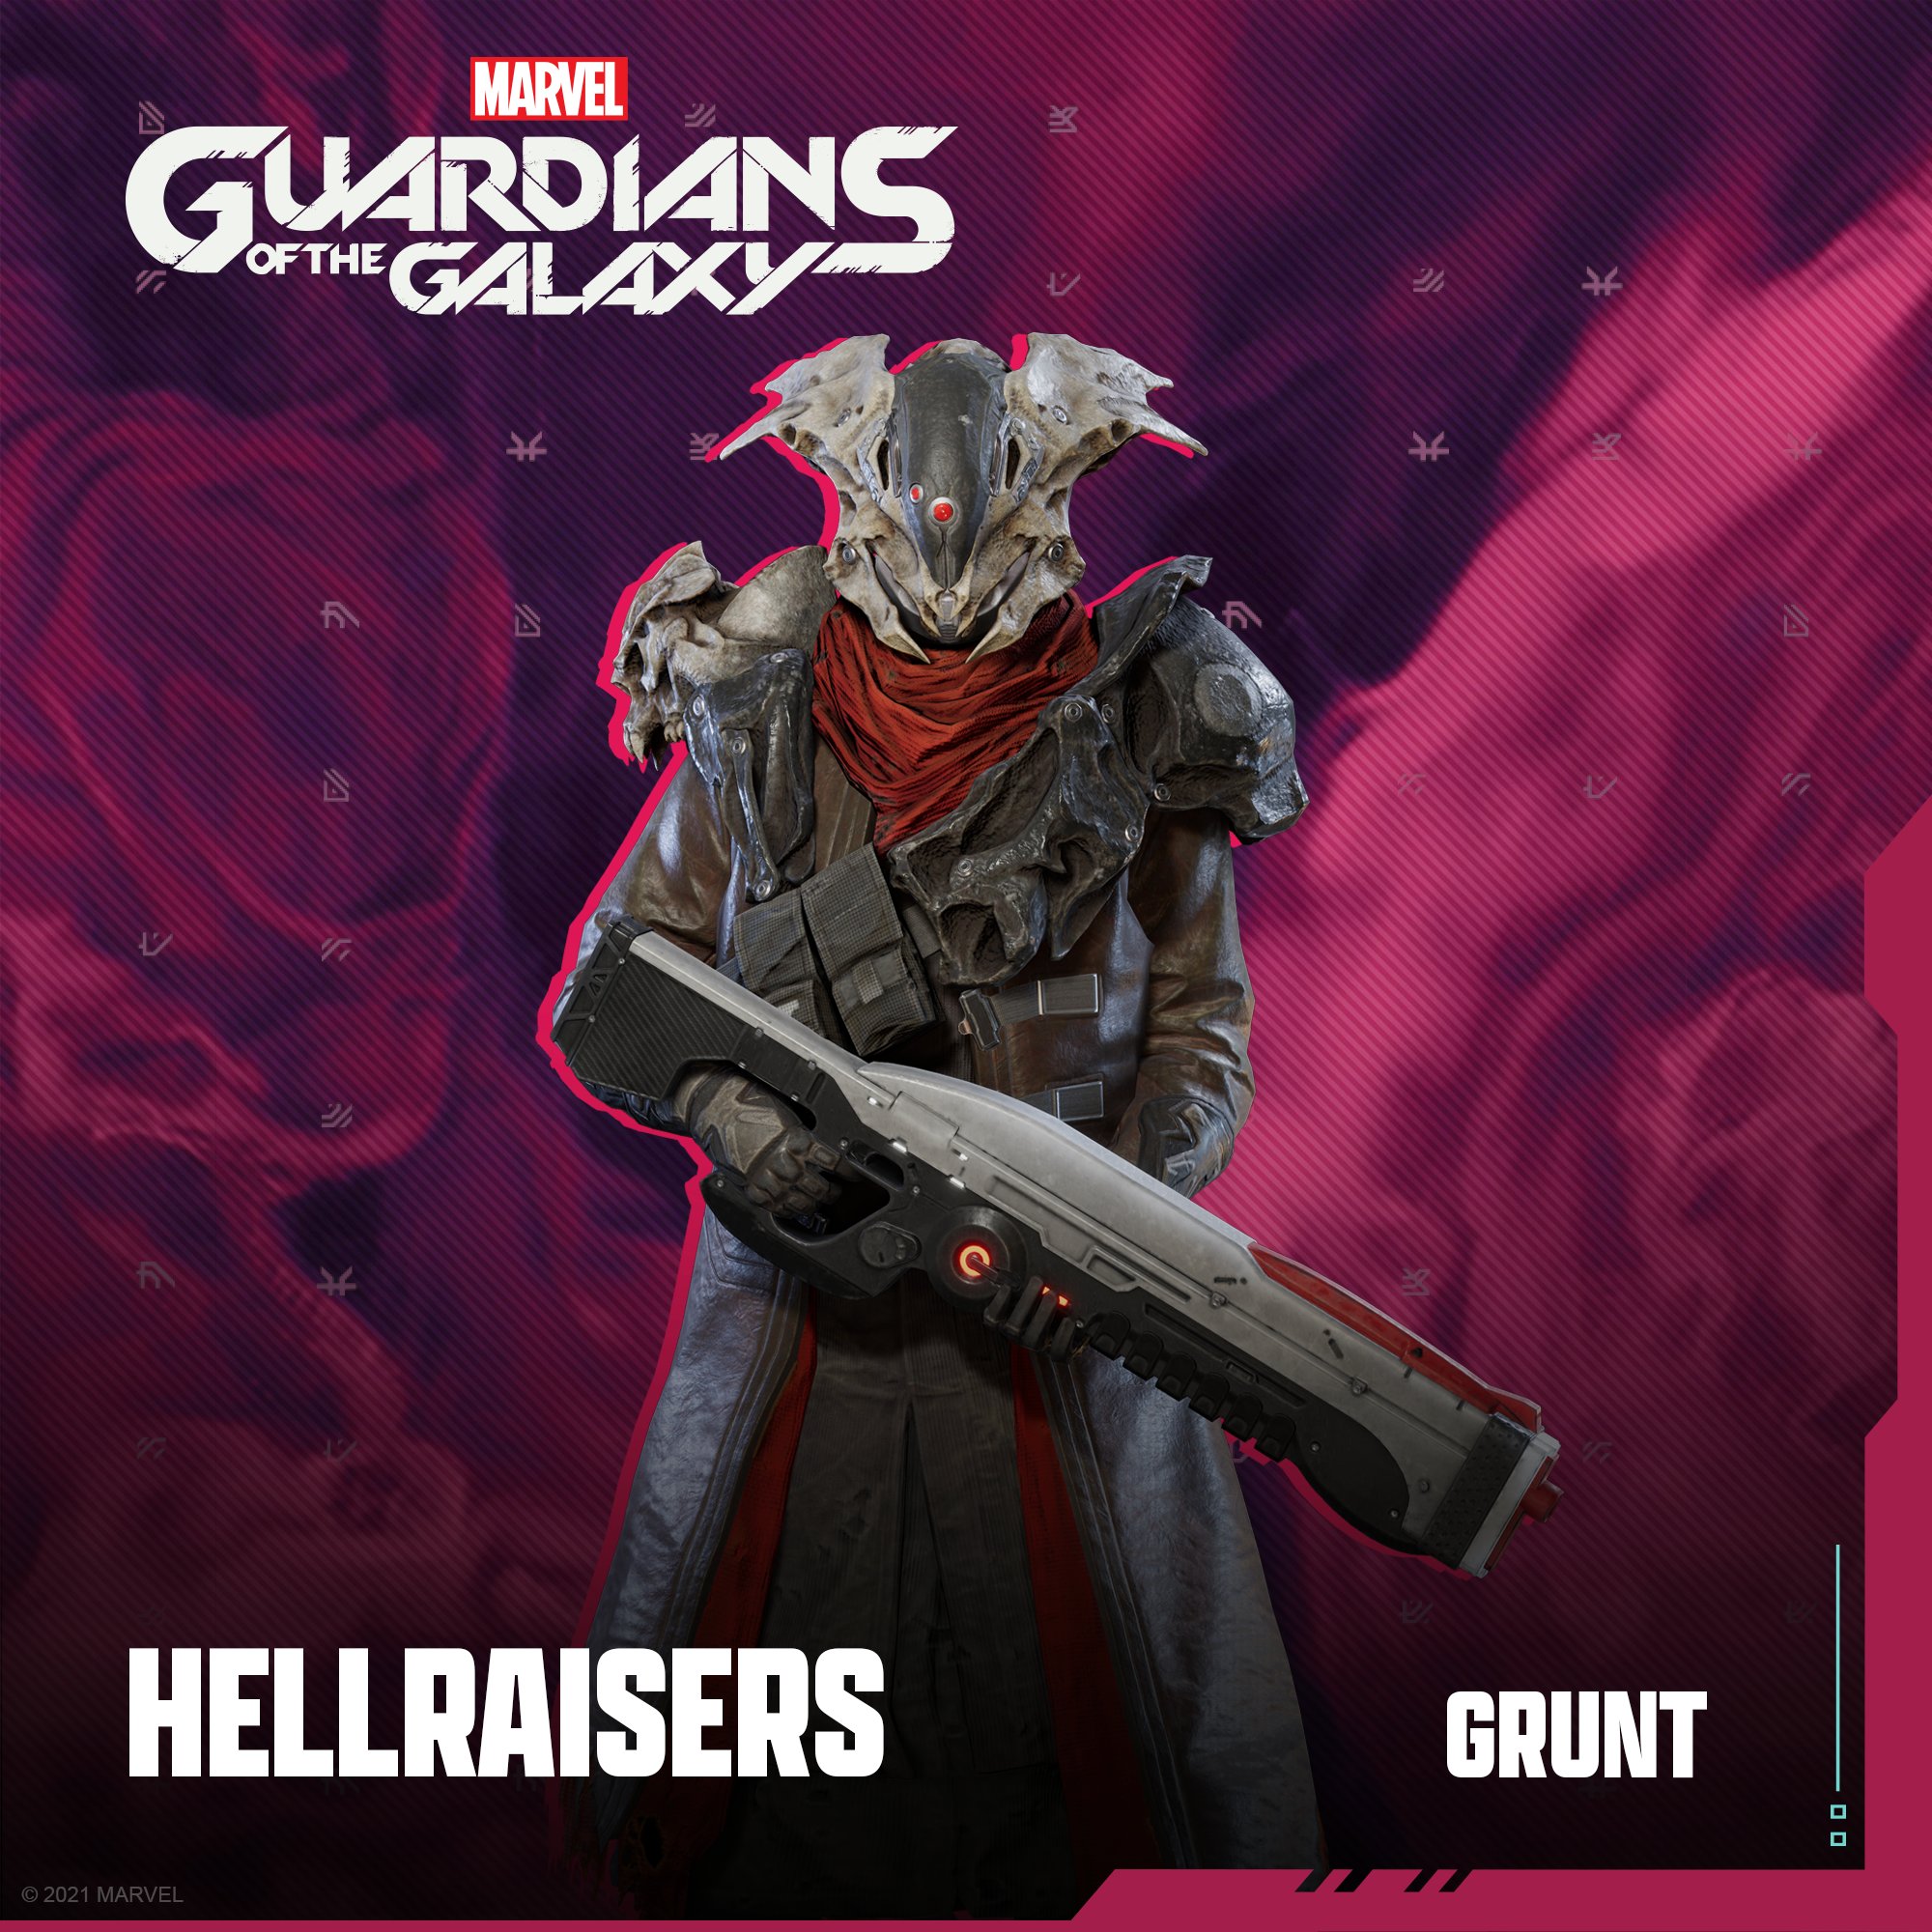 Монстры, корпус Нова и армия Леди Хеллбендер — кто выступит противниками в Guardians of the Galaxy